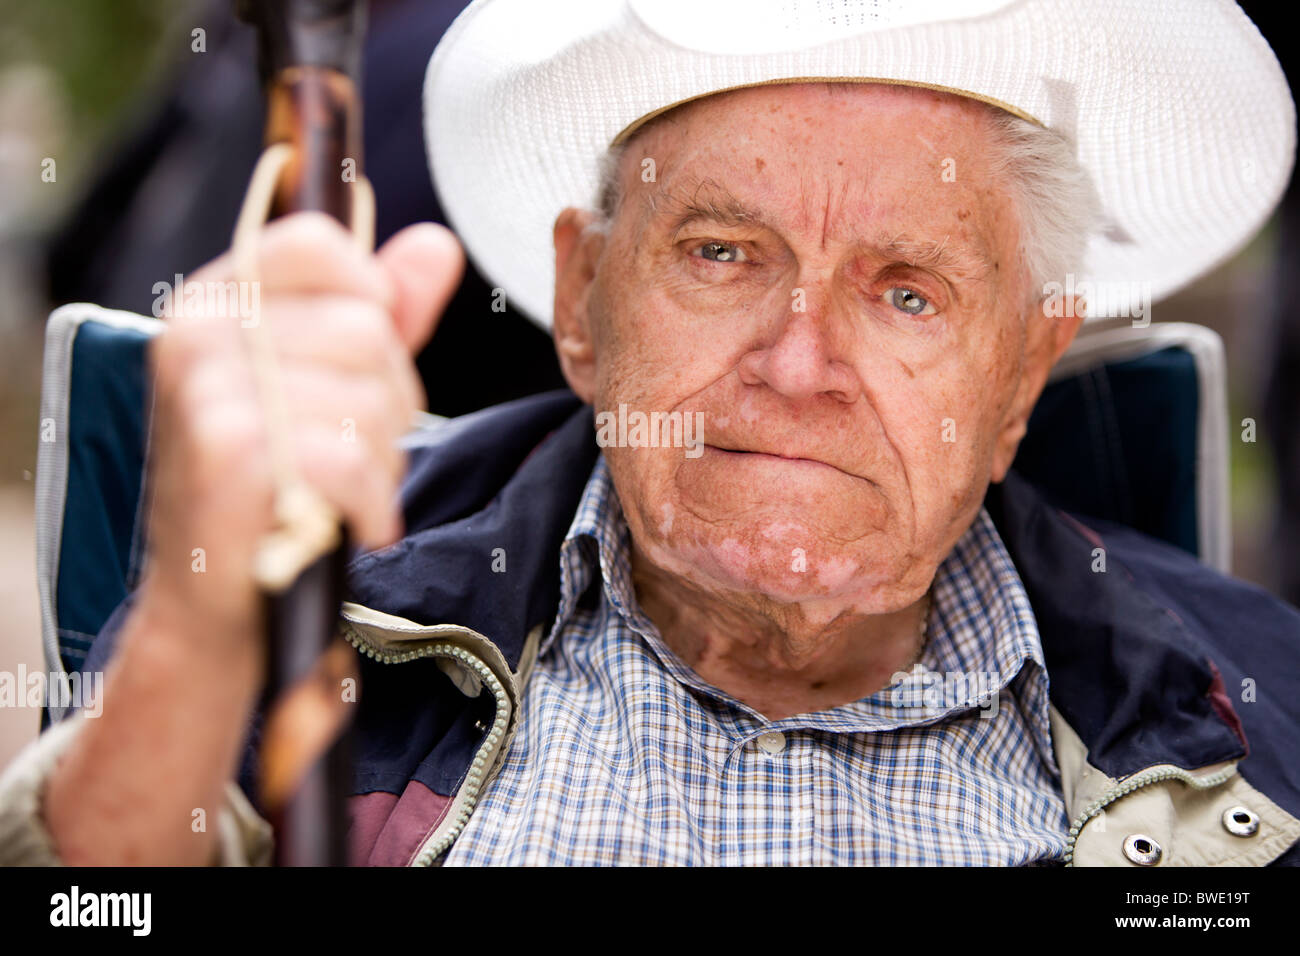 Un portrait d'un vieil homme grincheux assis sur une chaise Banque D'Images